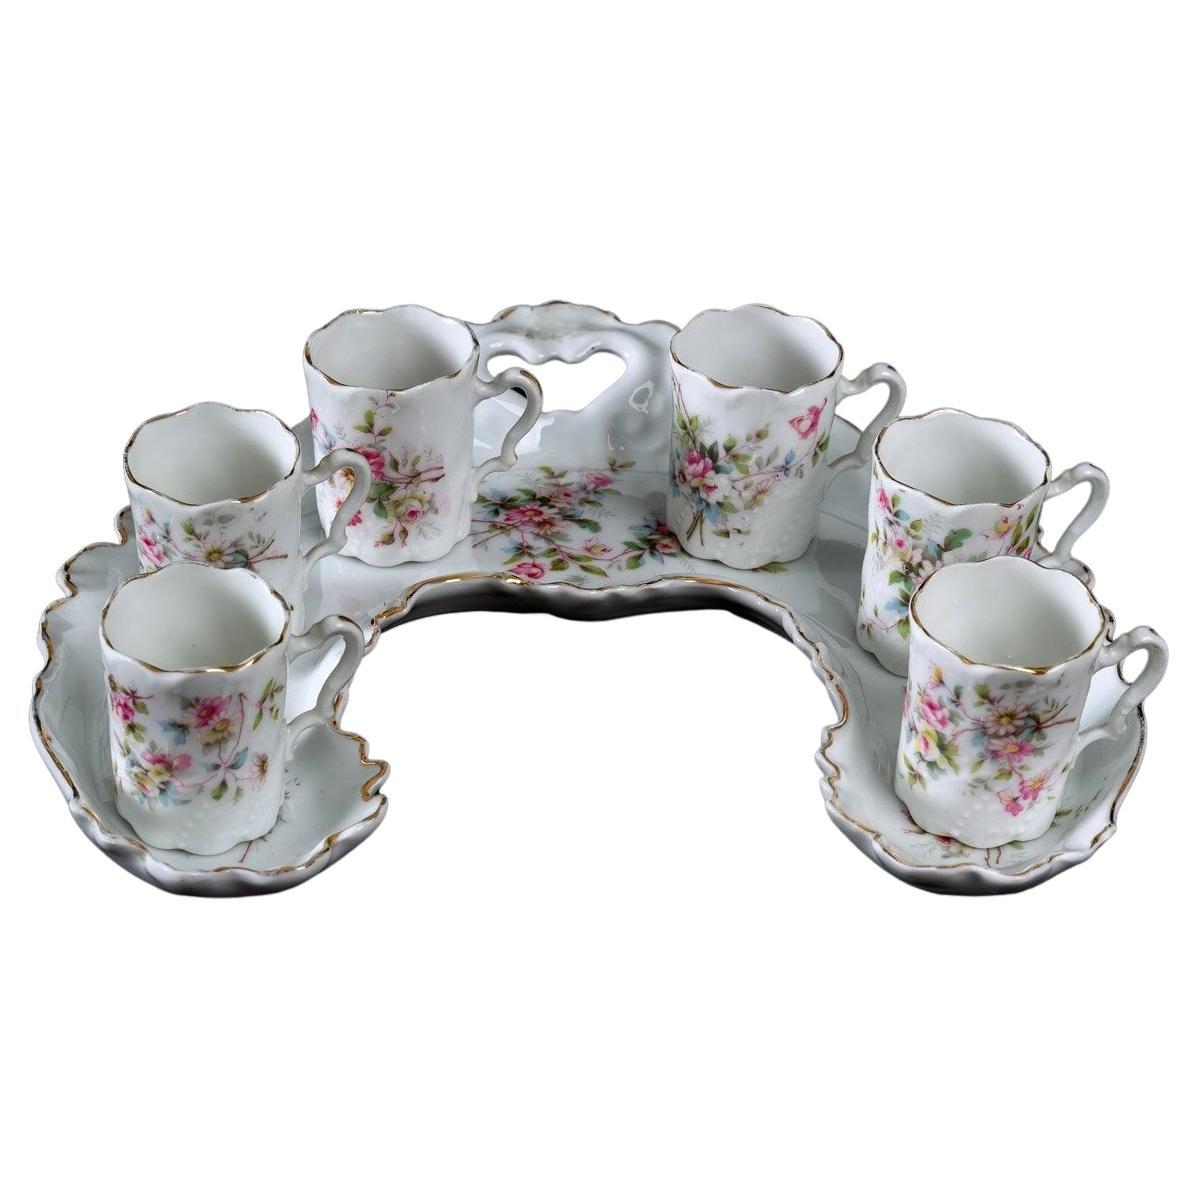 Mocha Service - Six Cups - Sèvres Porcelain - Period: Art Nouveau